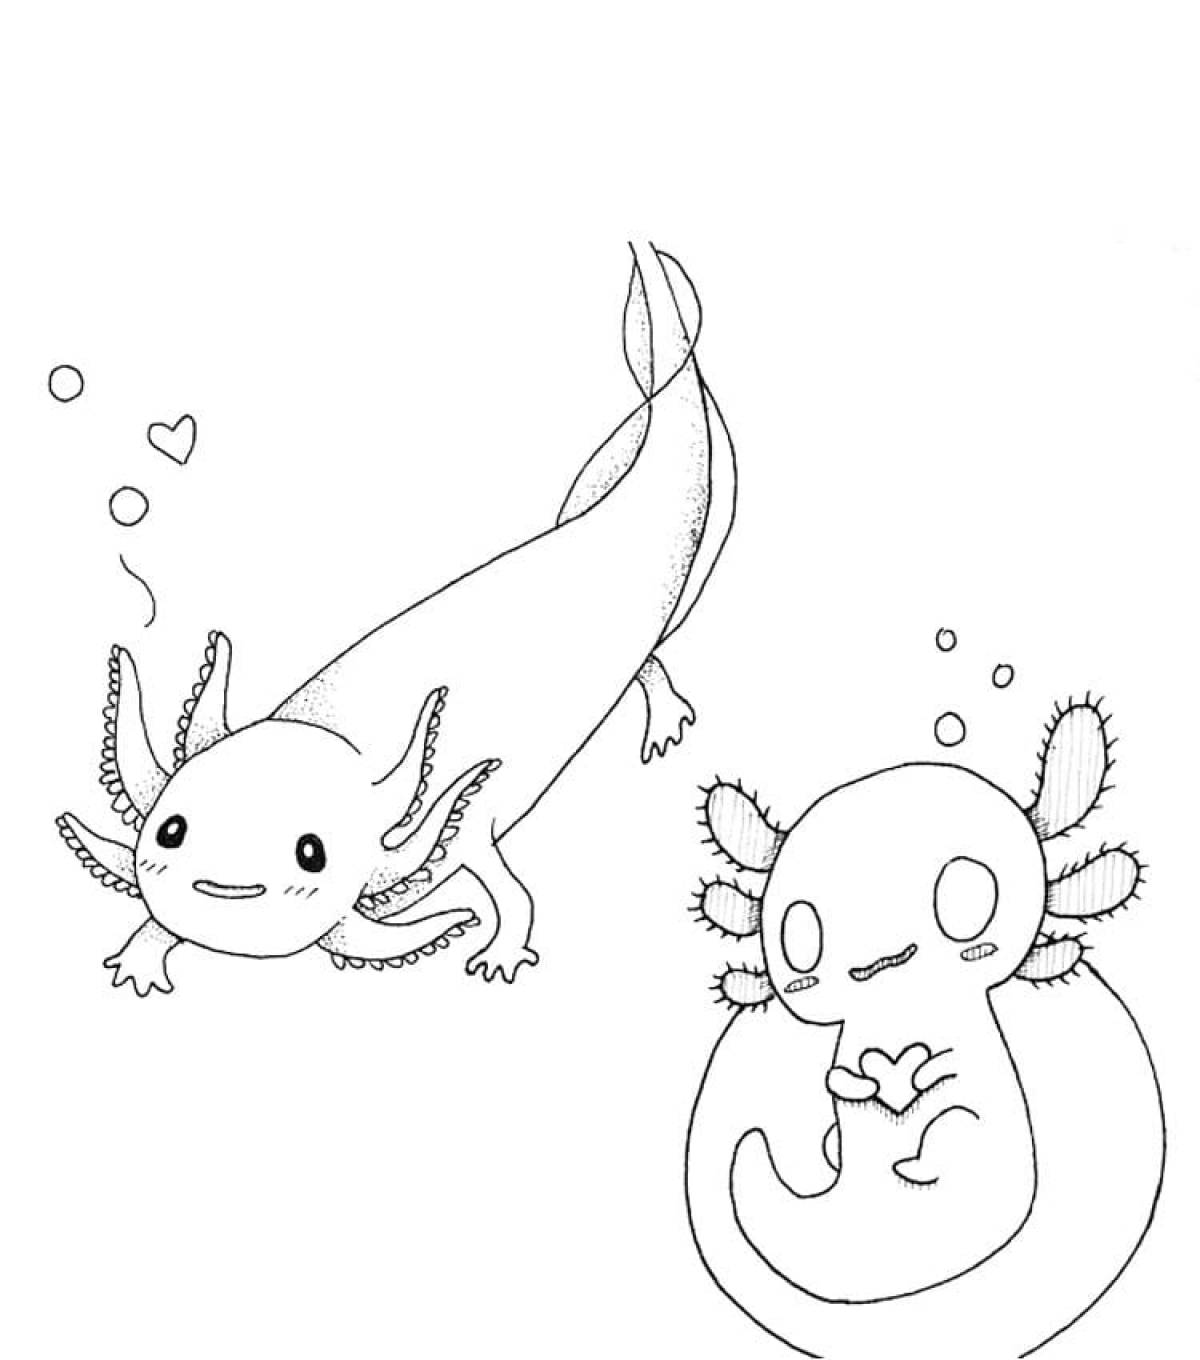 Mysterious axolotl coloring book